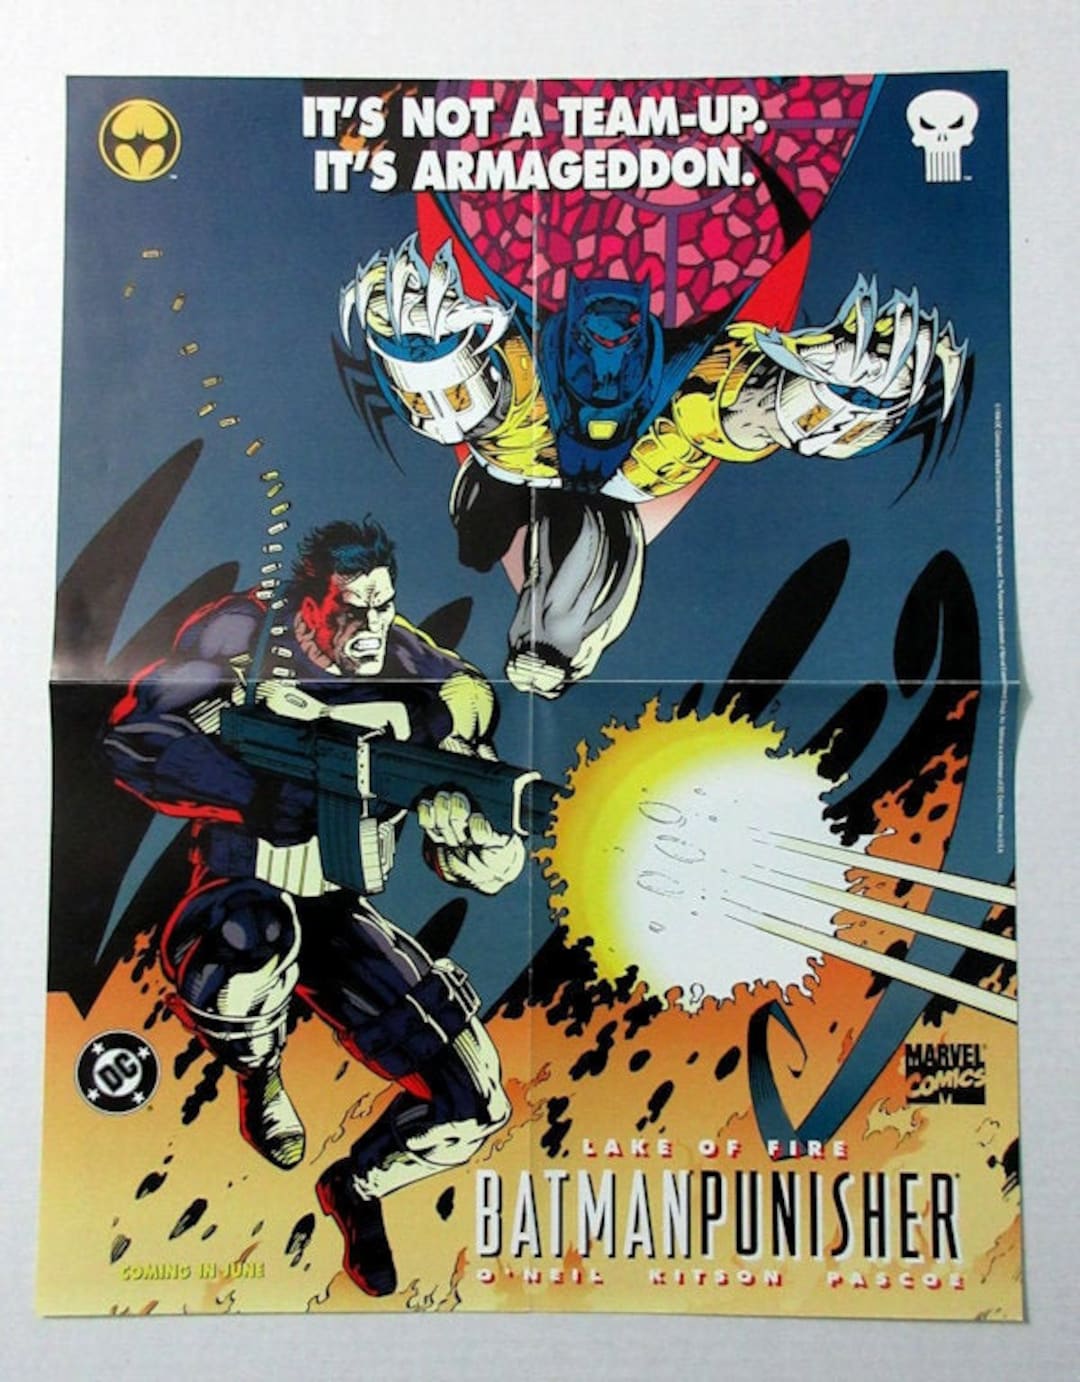 Have a Punisher mobile wallpaper. : r/Marvel